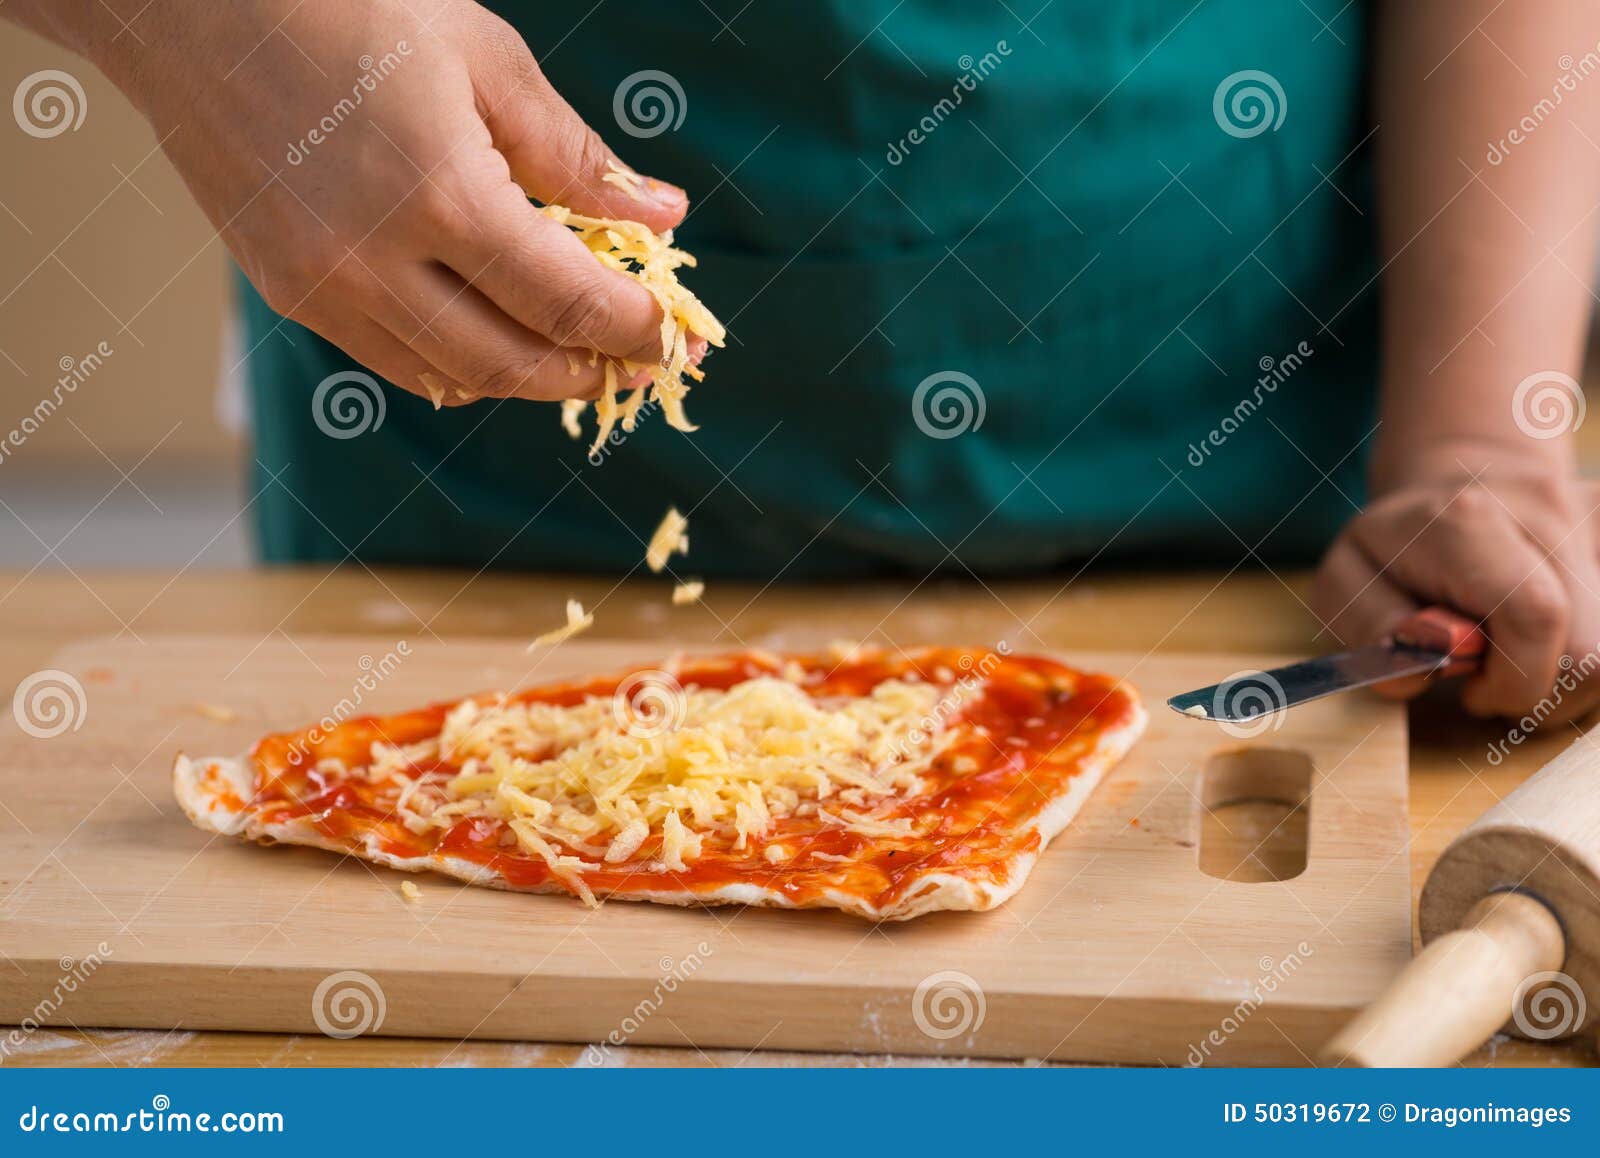 когда нужно класть сыр в пиццу в духовке фото 100